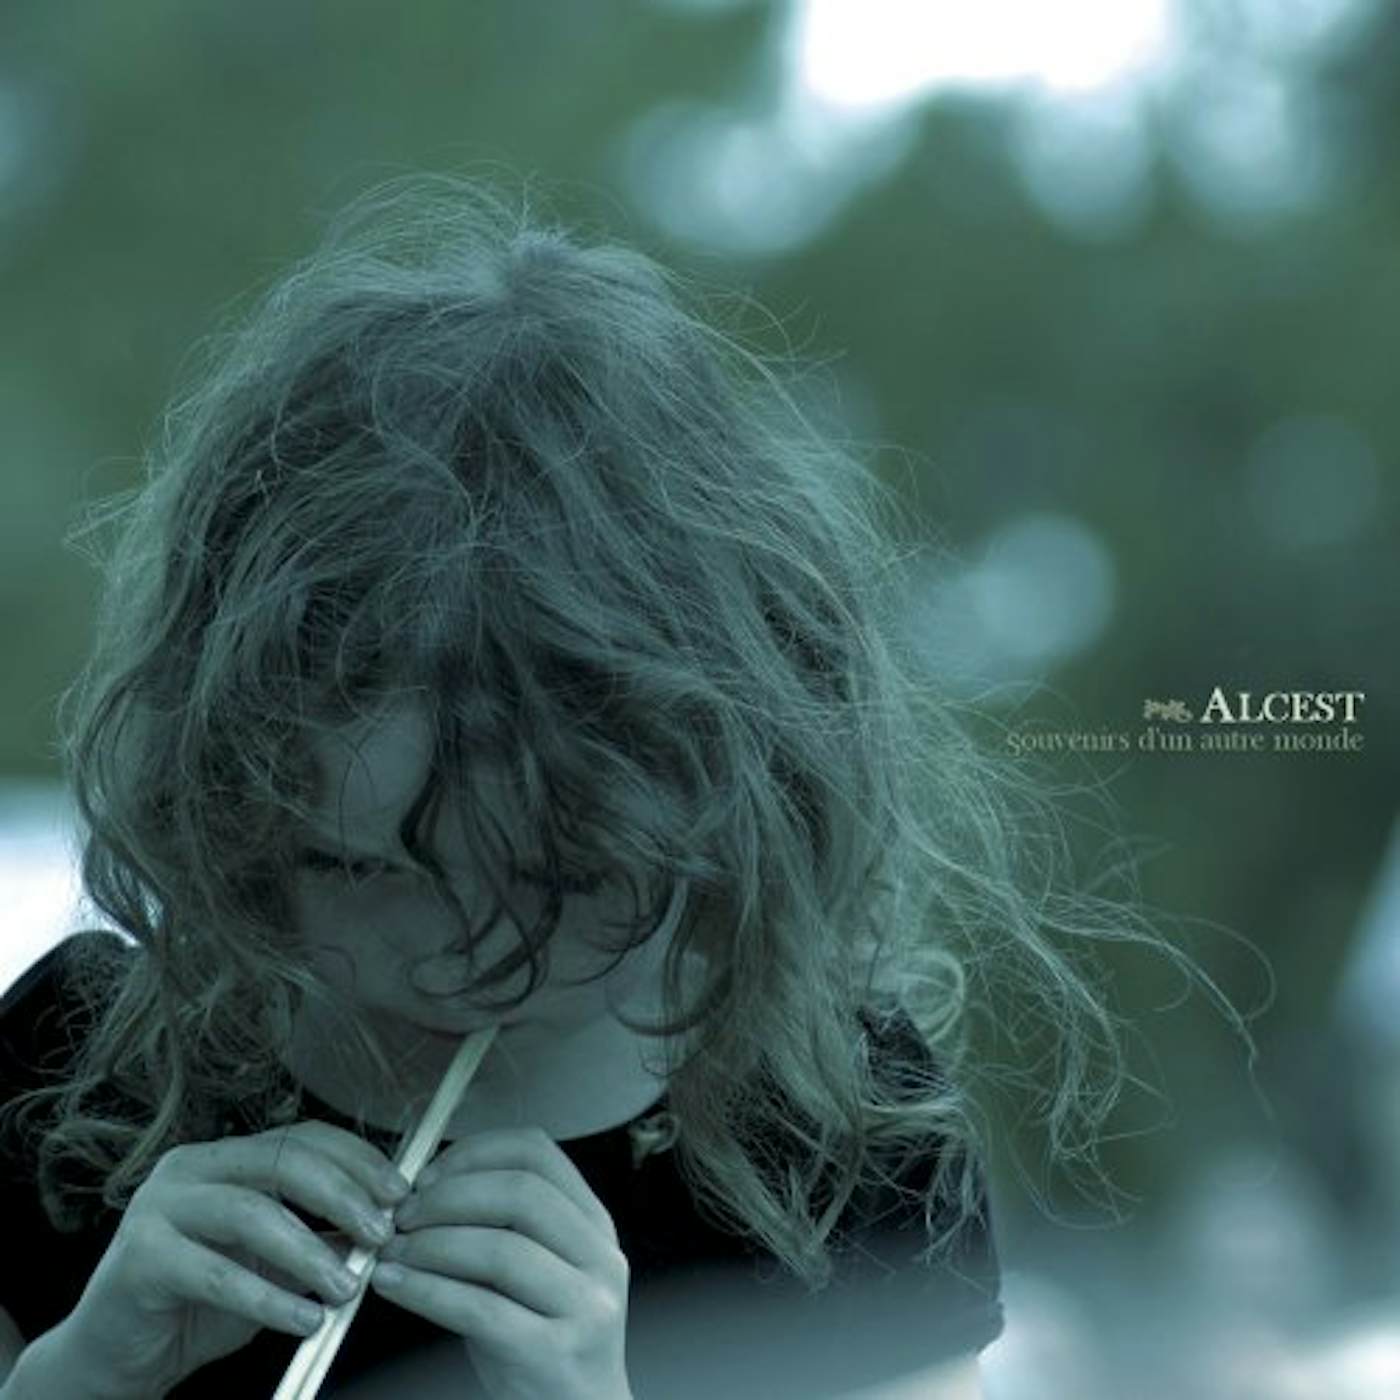 Alcest SOUVENIRS D'UN AUTRE MONDE CD